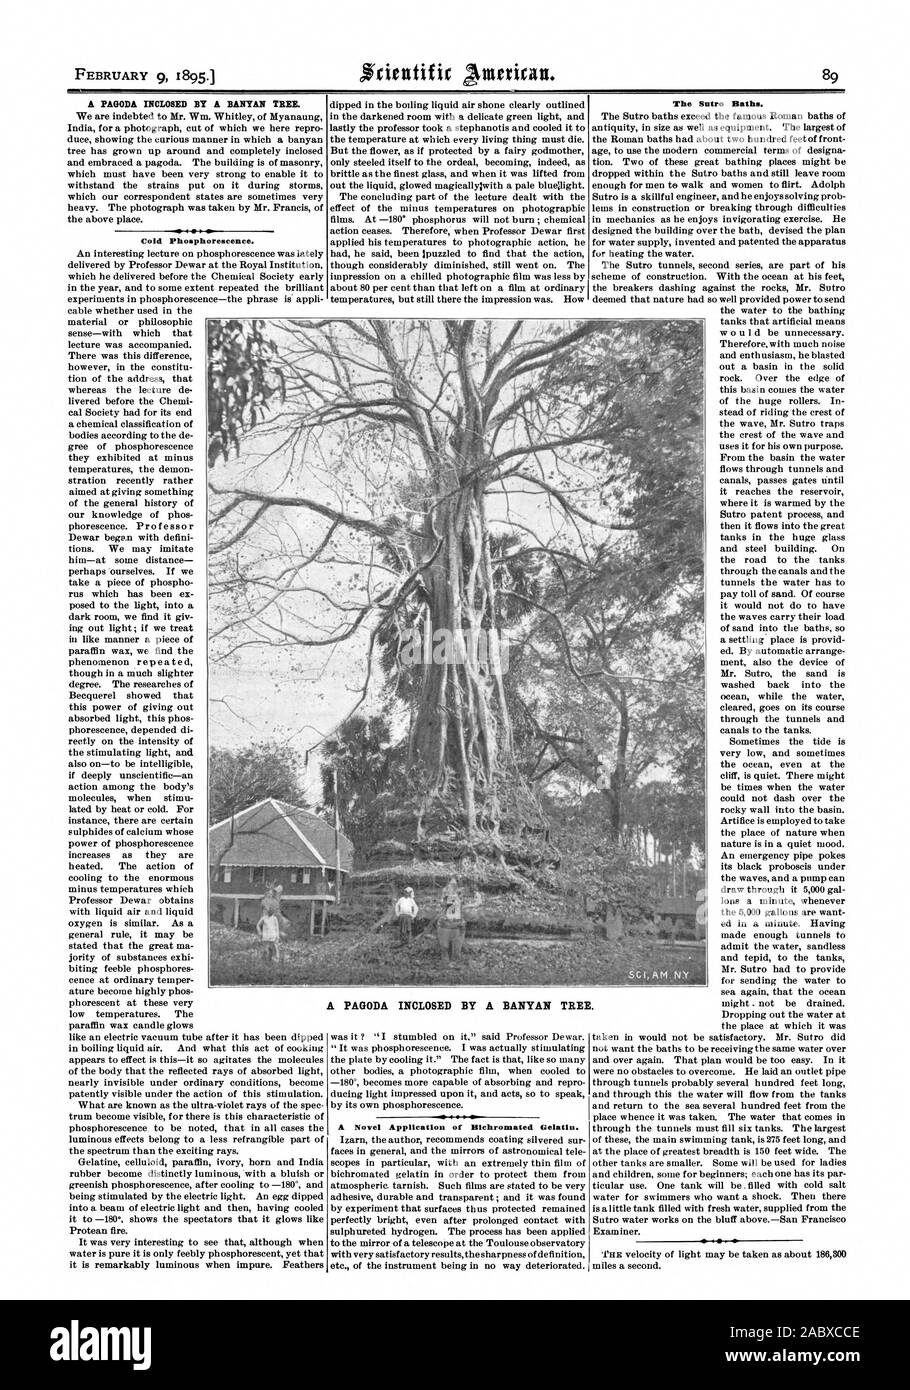 El 9 de febrero de 1895. Una pagoda recubierto de grasa POR UN BANYAN TREE. Frío fosforescencia. Una novedosa aplicación de Bichromated gelatina. Los baños Start'. Una pagoda recubierto de grasa por un árbol de banyan, Scientific American, 1895-02-09 Foto de stock